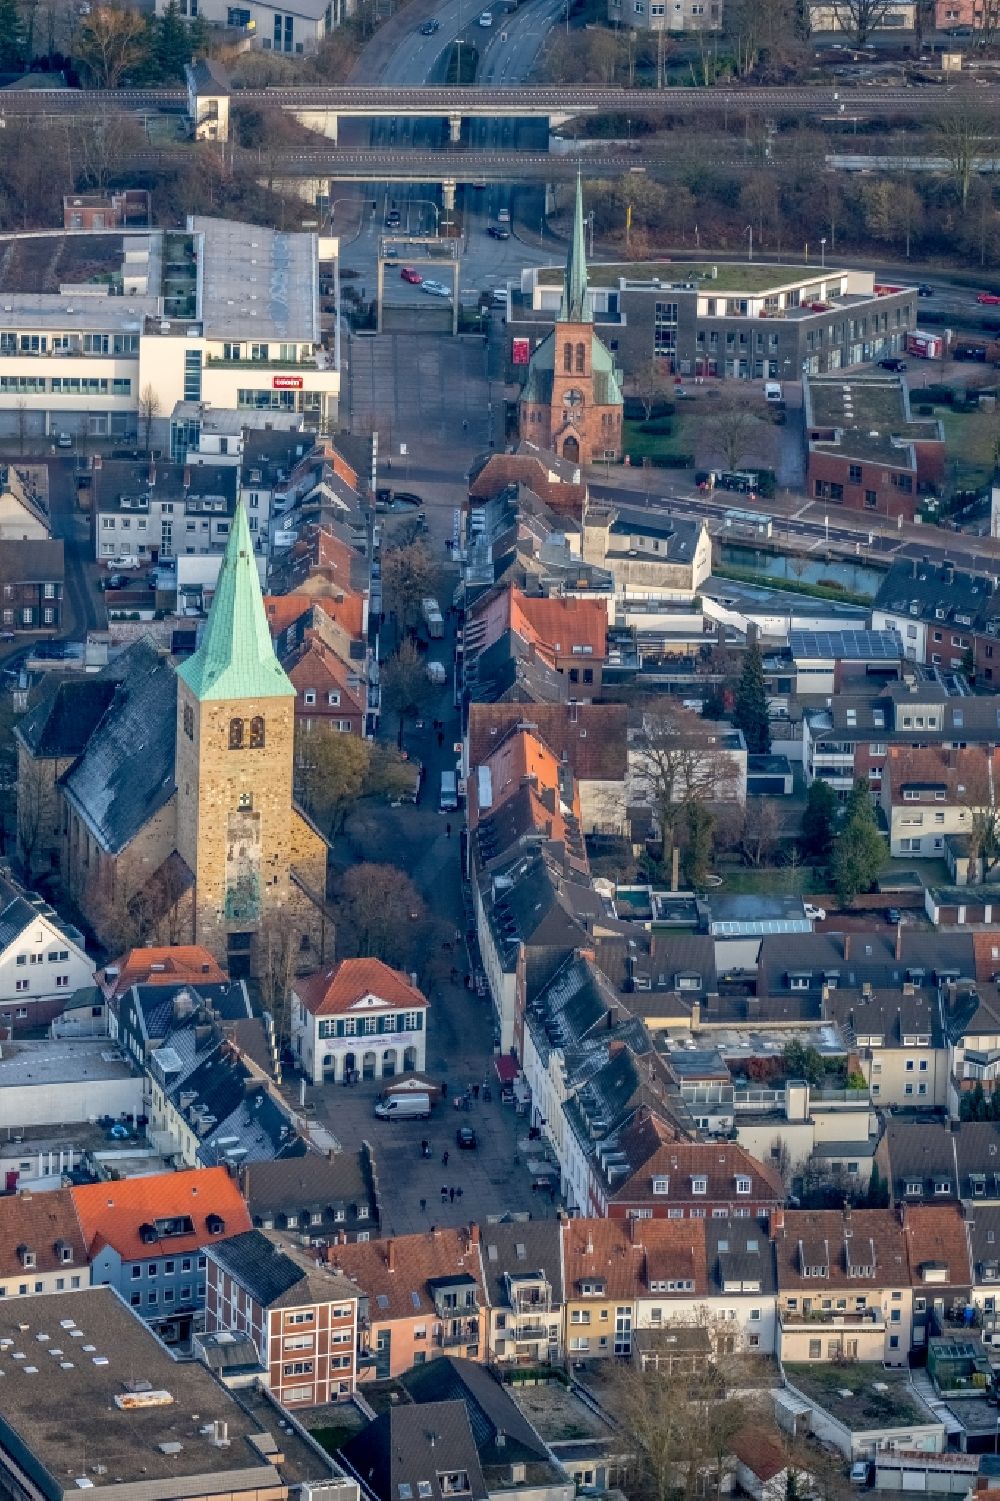 Luftbild Dorsten - Kirchengebäude der St. Agatha am Markt in Dorsten im Bundesland Nordrhein-Westfalen, Deutschland